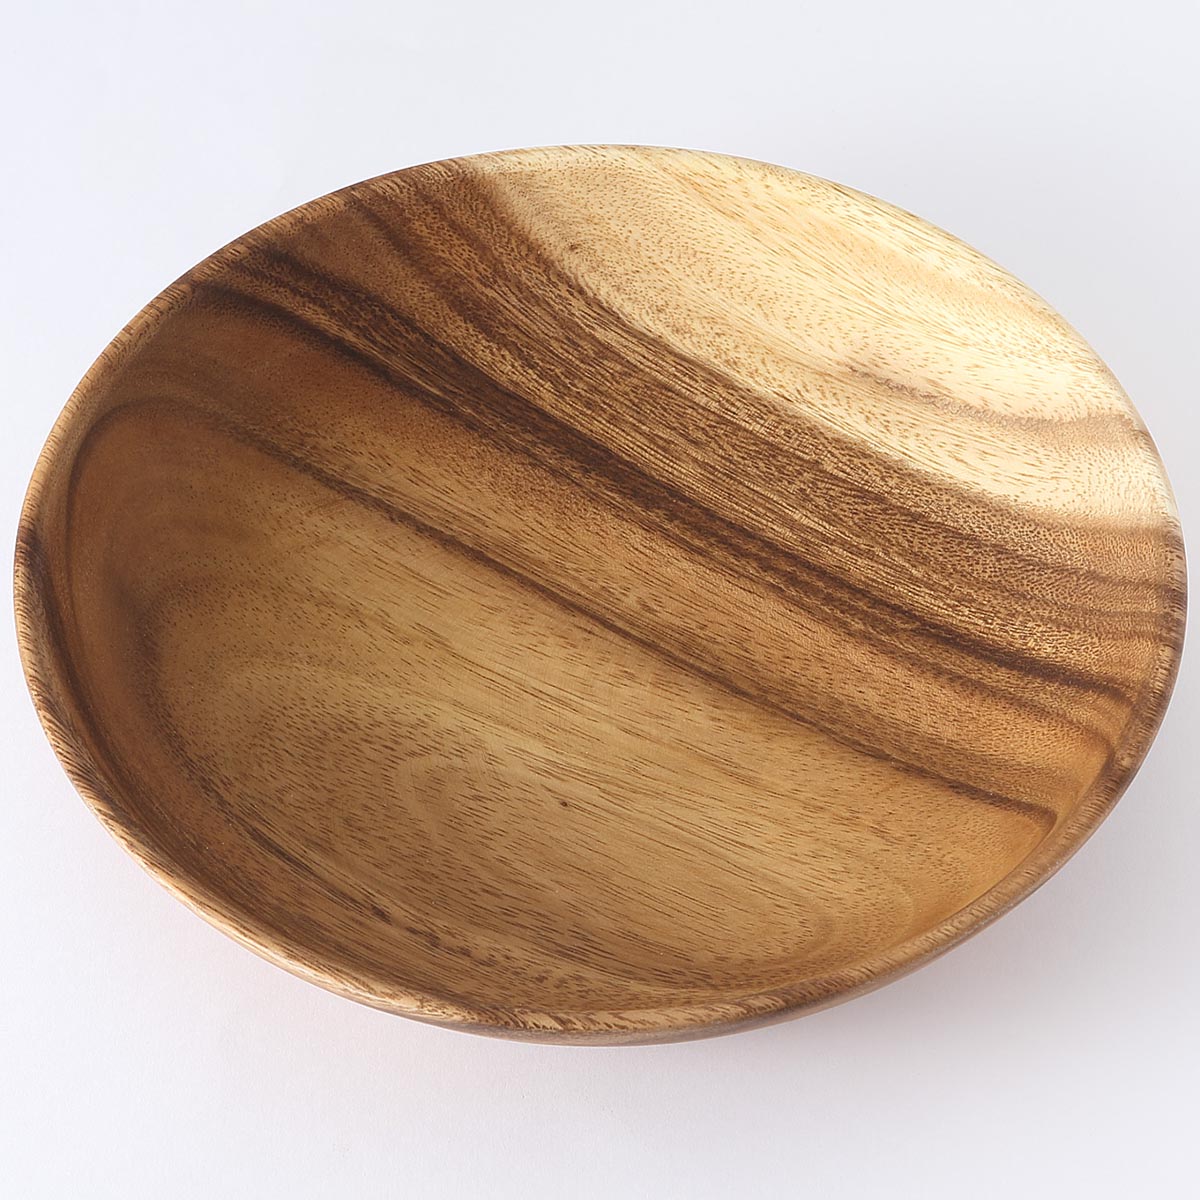 こちらは無印良品の木製深皿。木目の美しいアカシア材を使っていて、カフェ風のテーブルコーディネートにぴったりです。落としても割れないので子供が使うのにもおすすめです◎